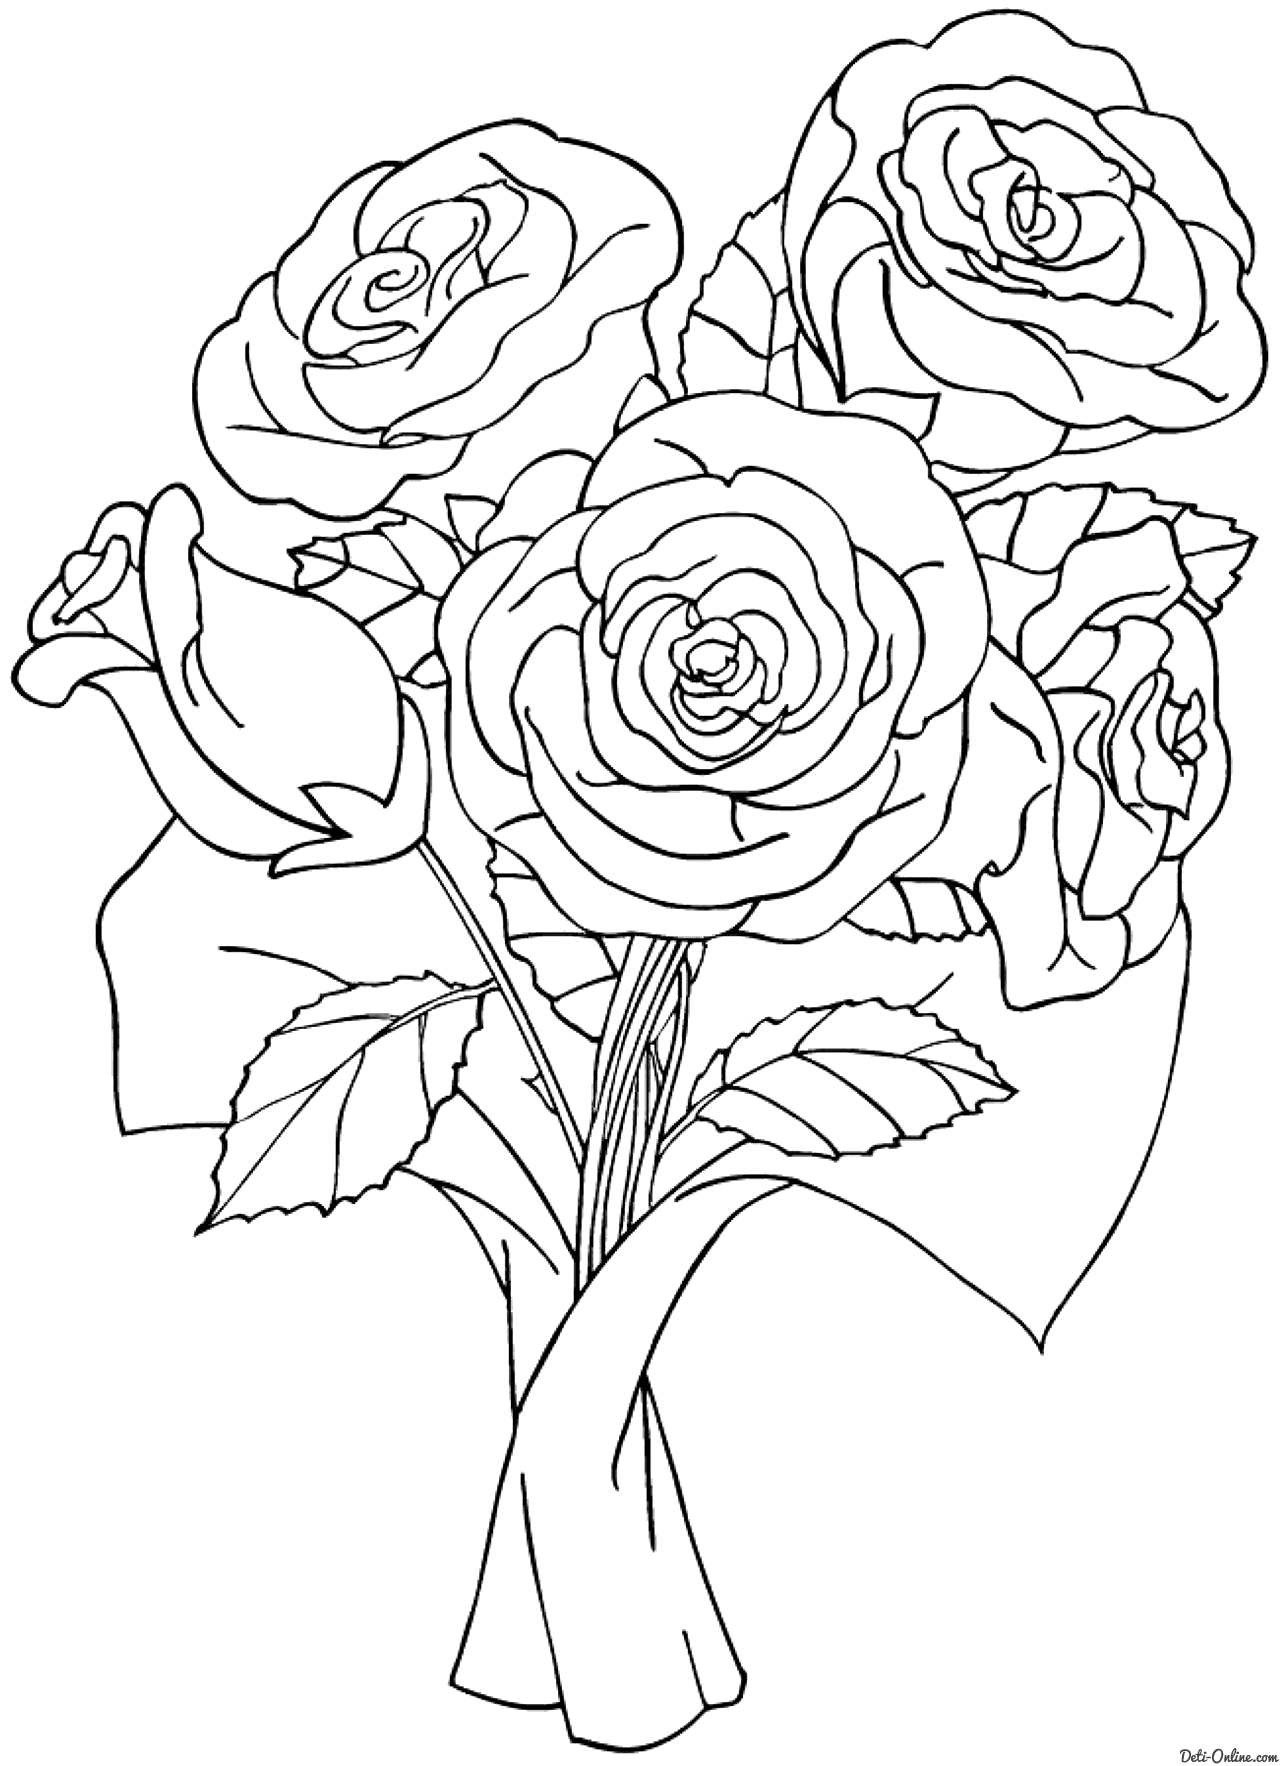 Нарисованный букет роз - 71 фото